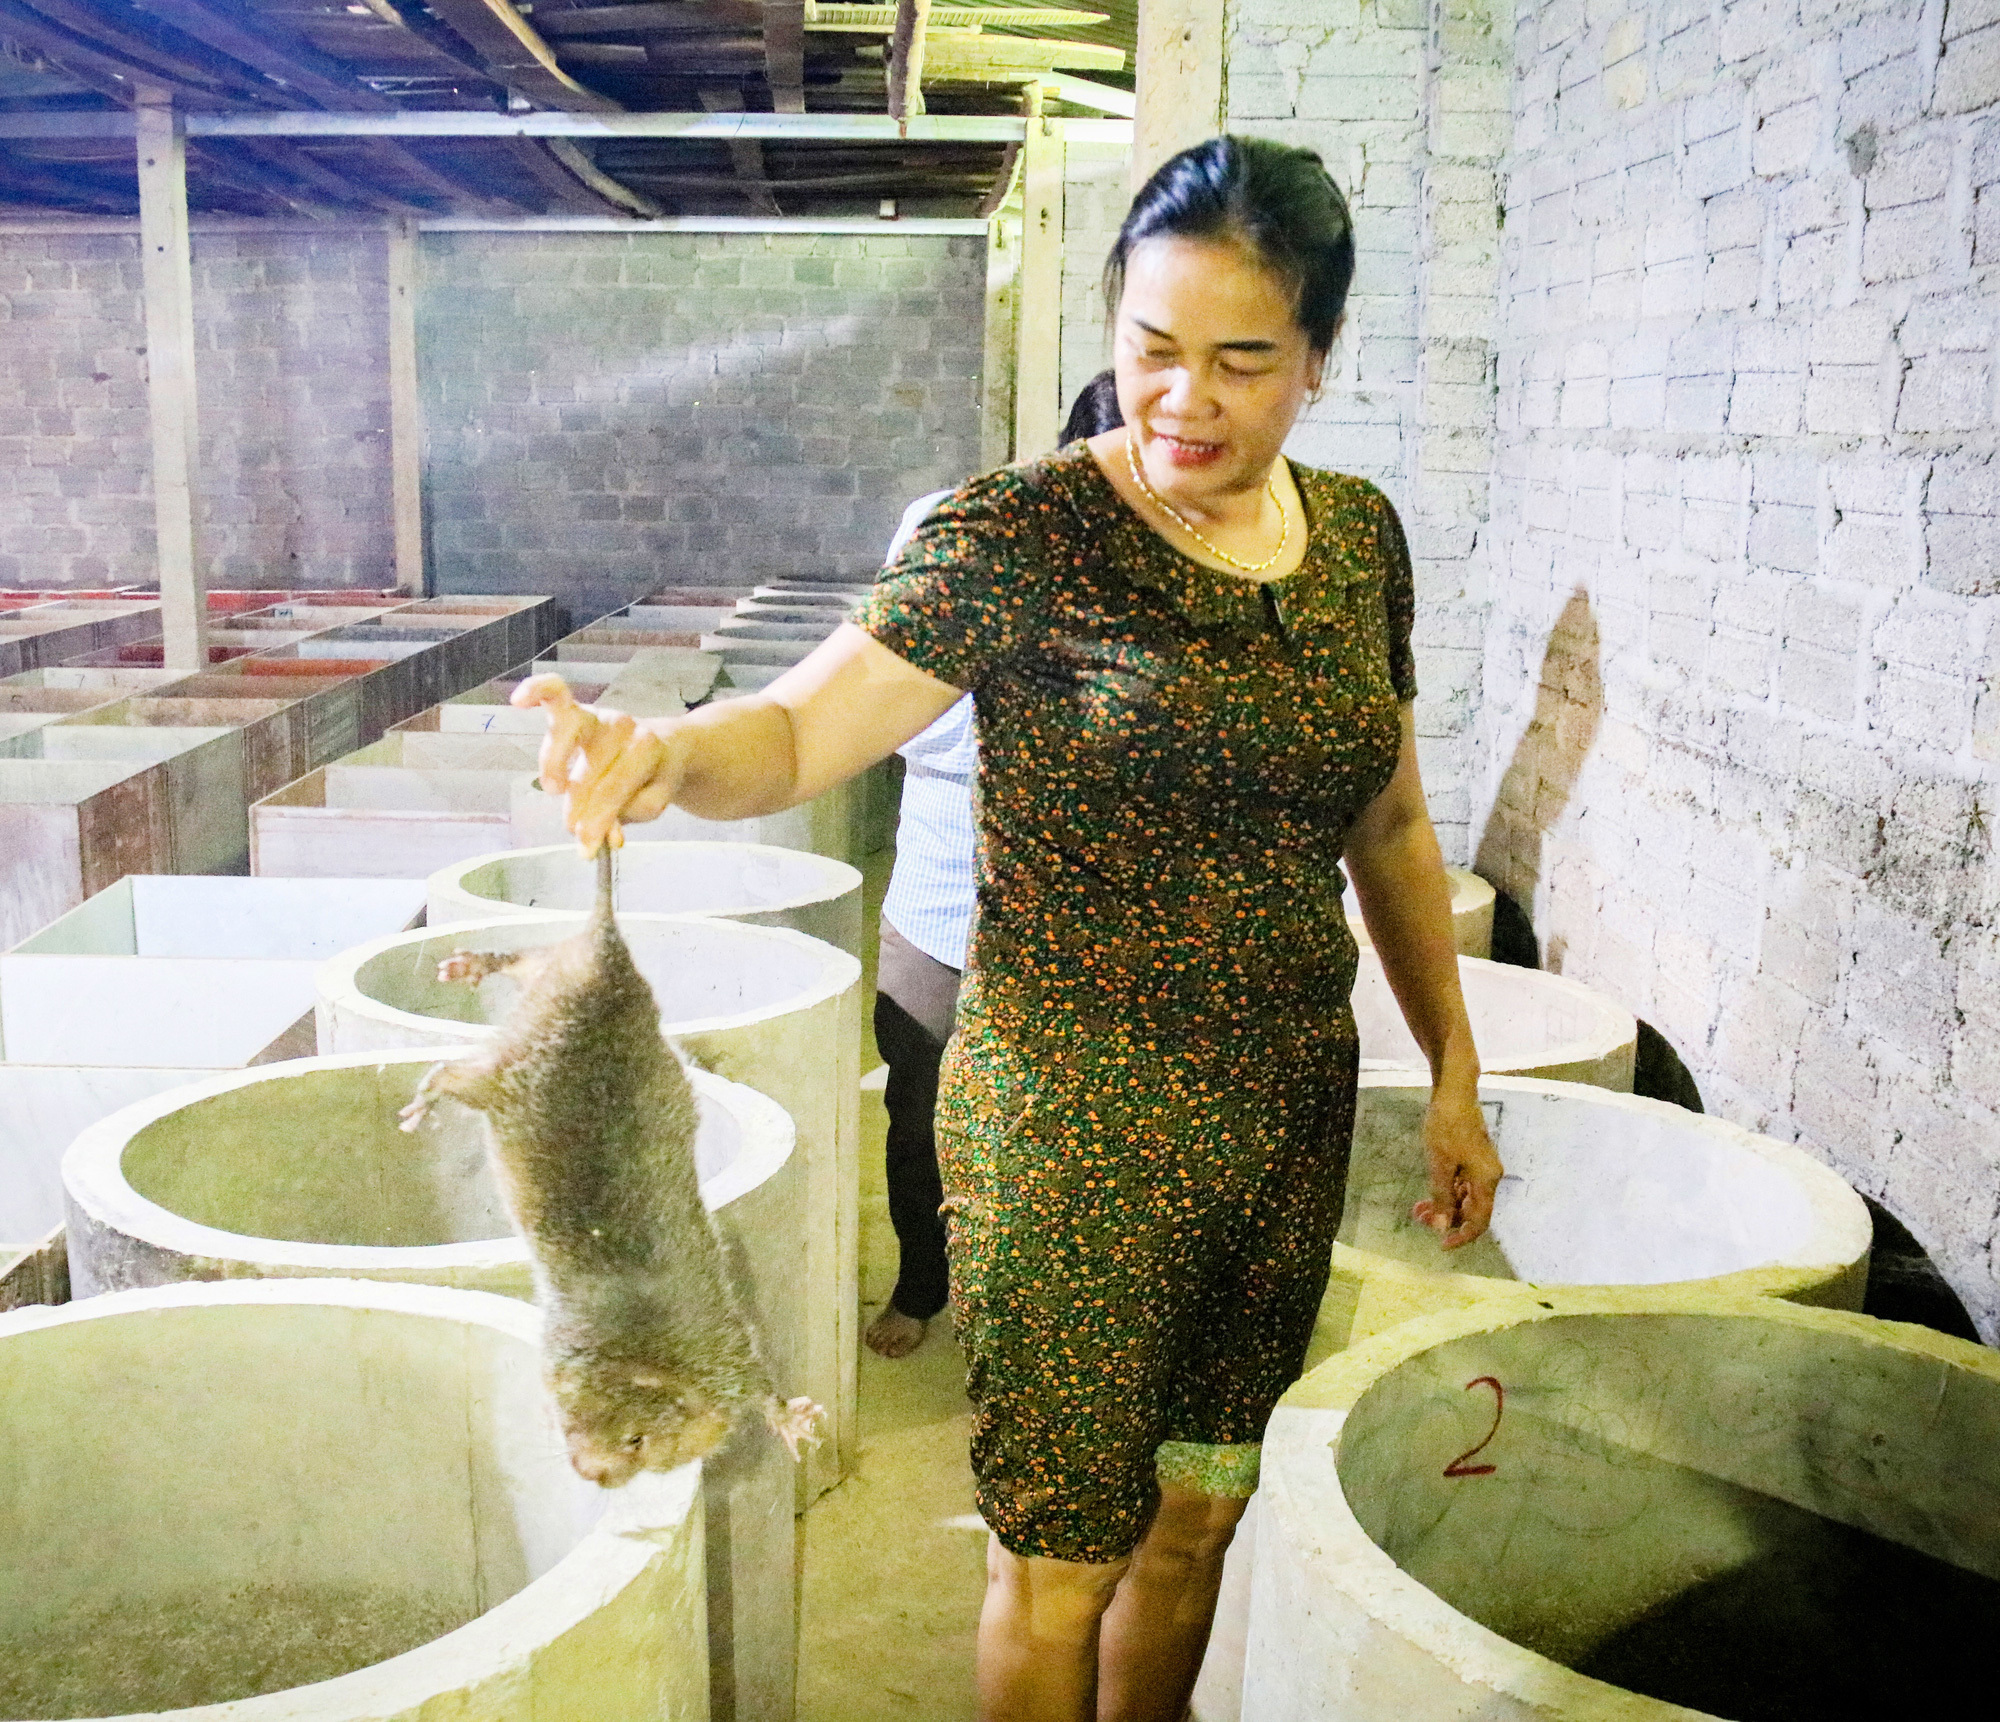 Nuôi loài chuột nghiện ăn tre, nứa, không cần uống nước, một nông dân tỉnh Hà Tĩnh phát tài (+Video) Nuoi-dui-1